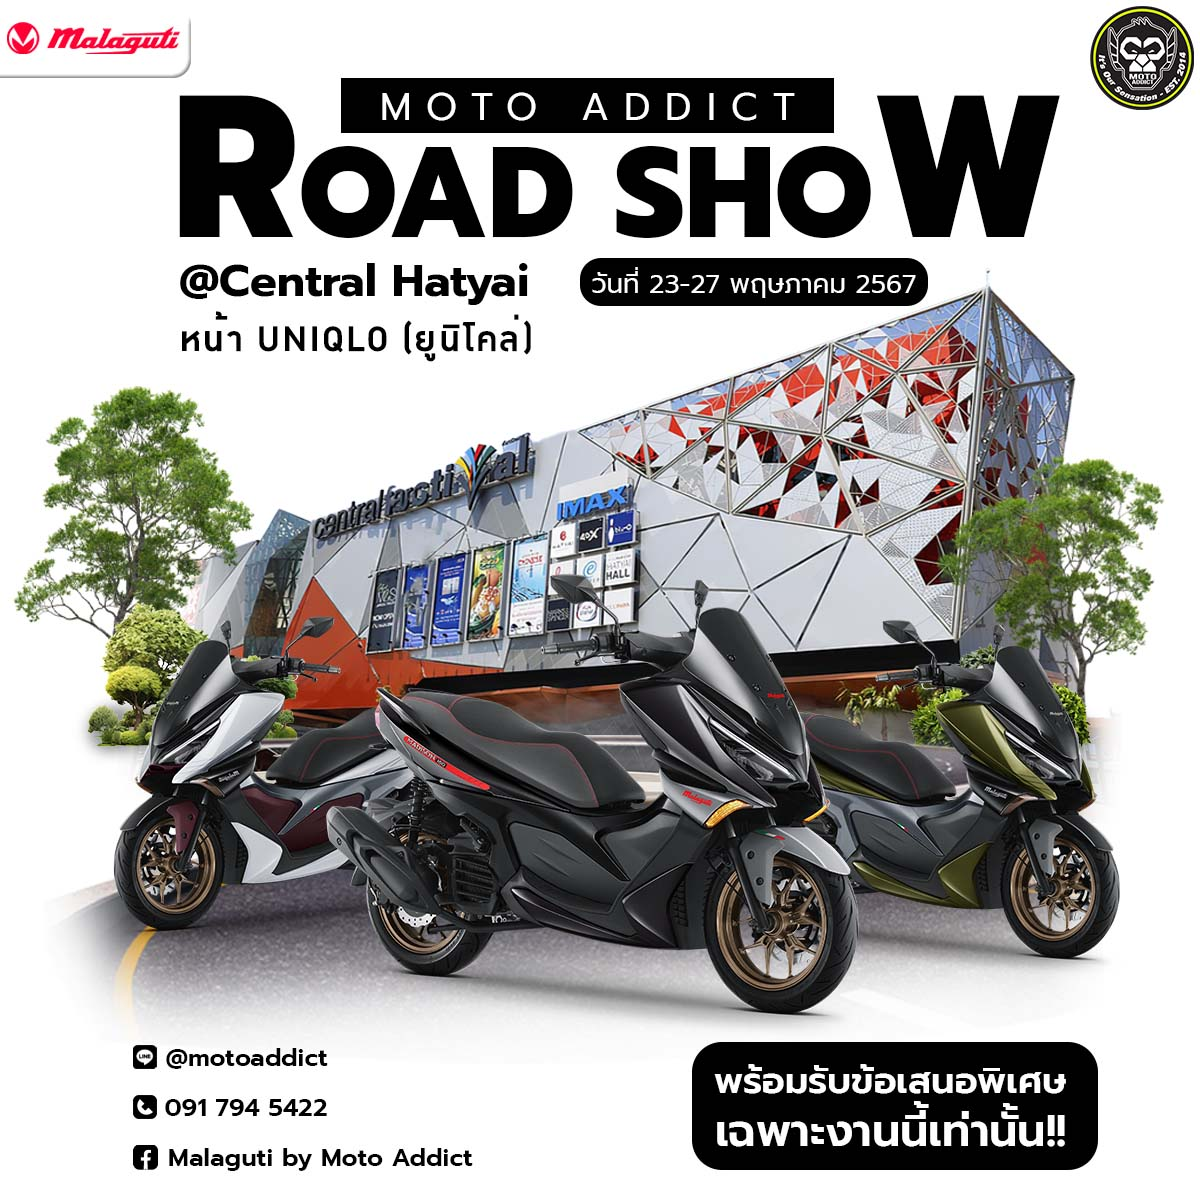 Moto Addict Road Show Malaguti